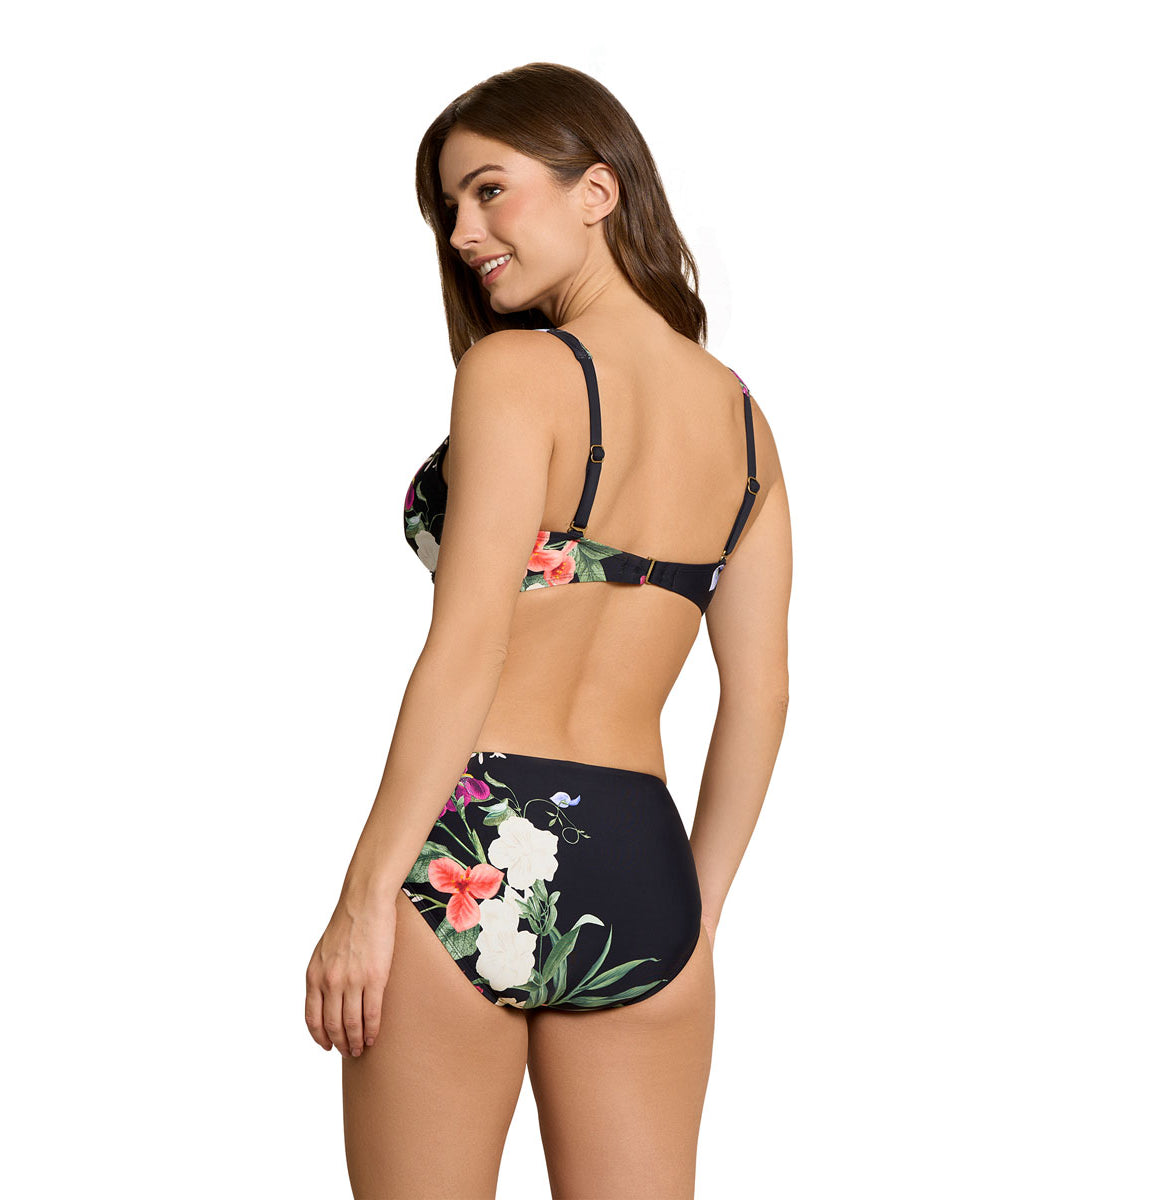 Jantzen: Floral Fantasy Vera Surplice Bra Bikini Top